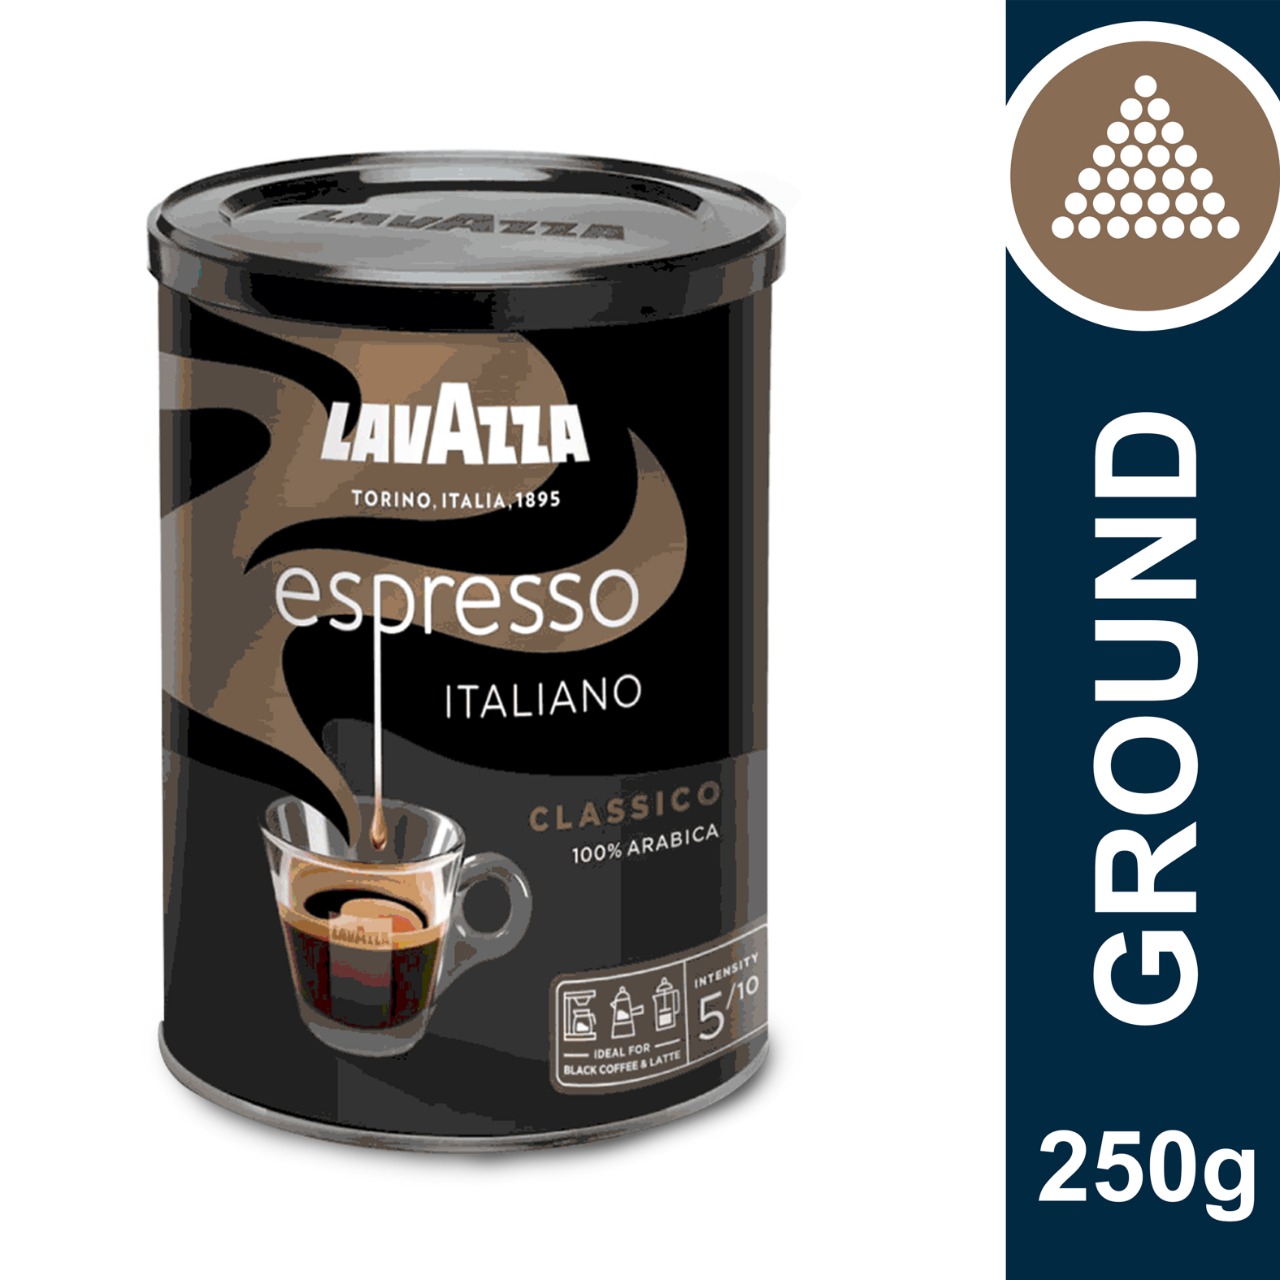 Lavazza Espresso Italiano Ground Coffee 100% Arabica Tin Can 250gm